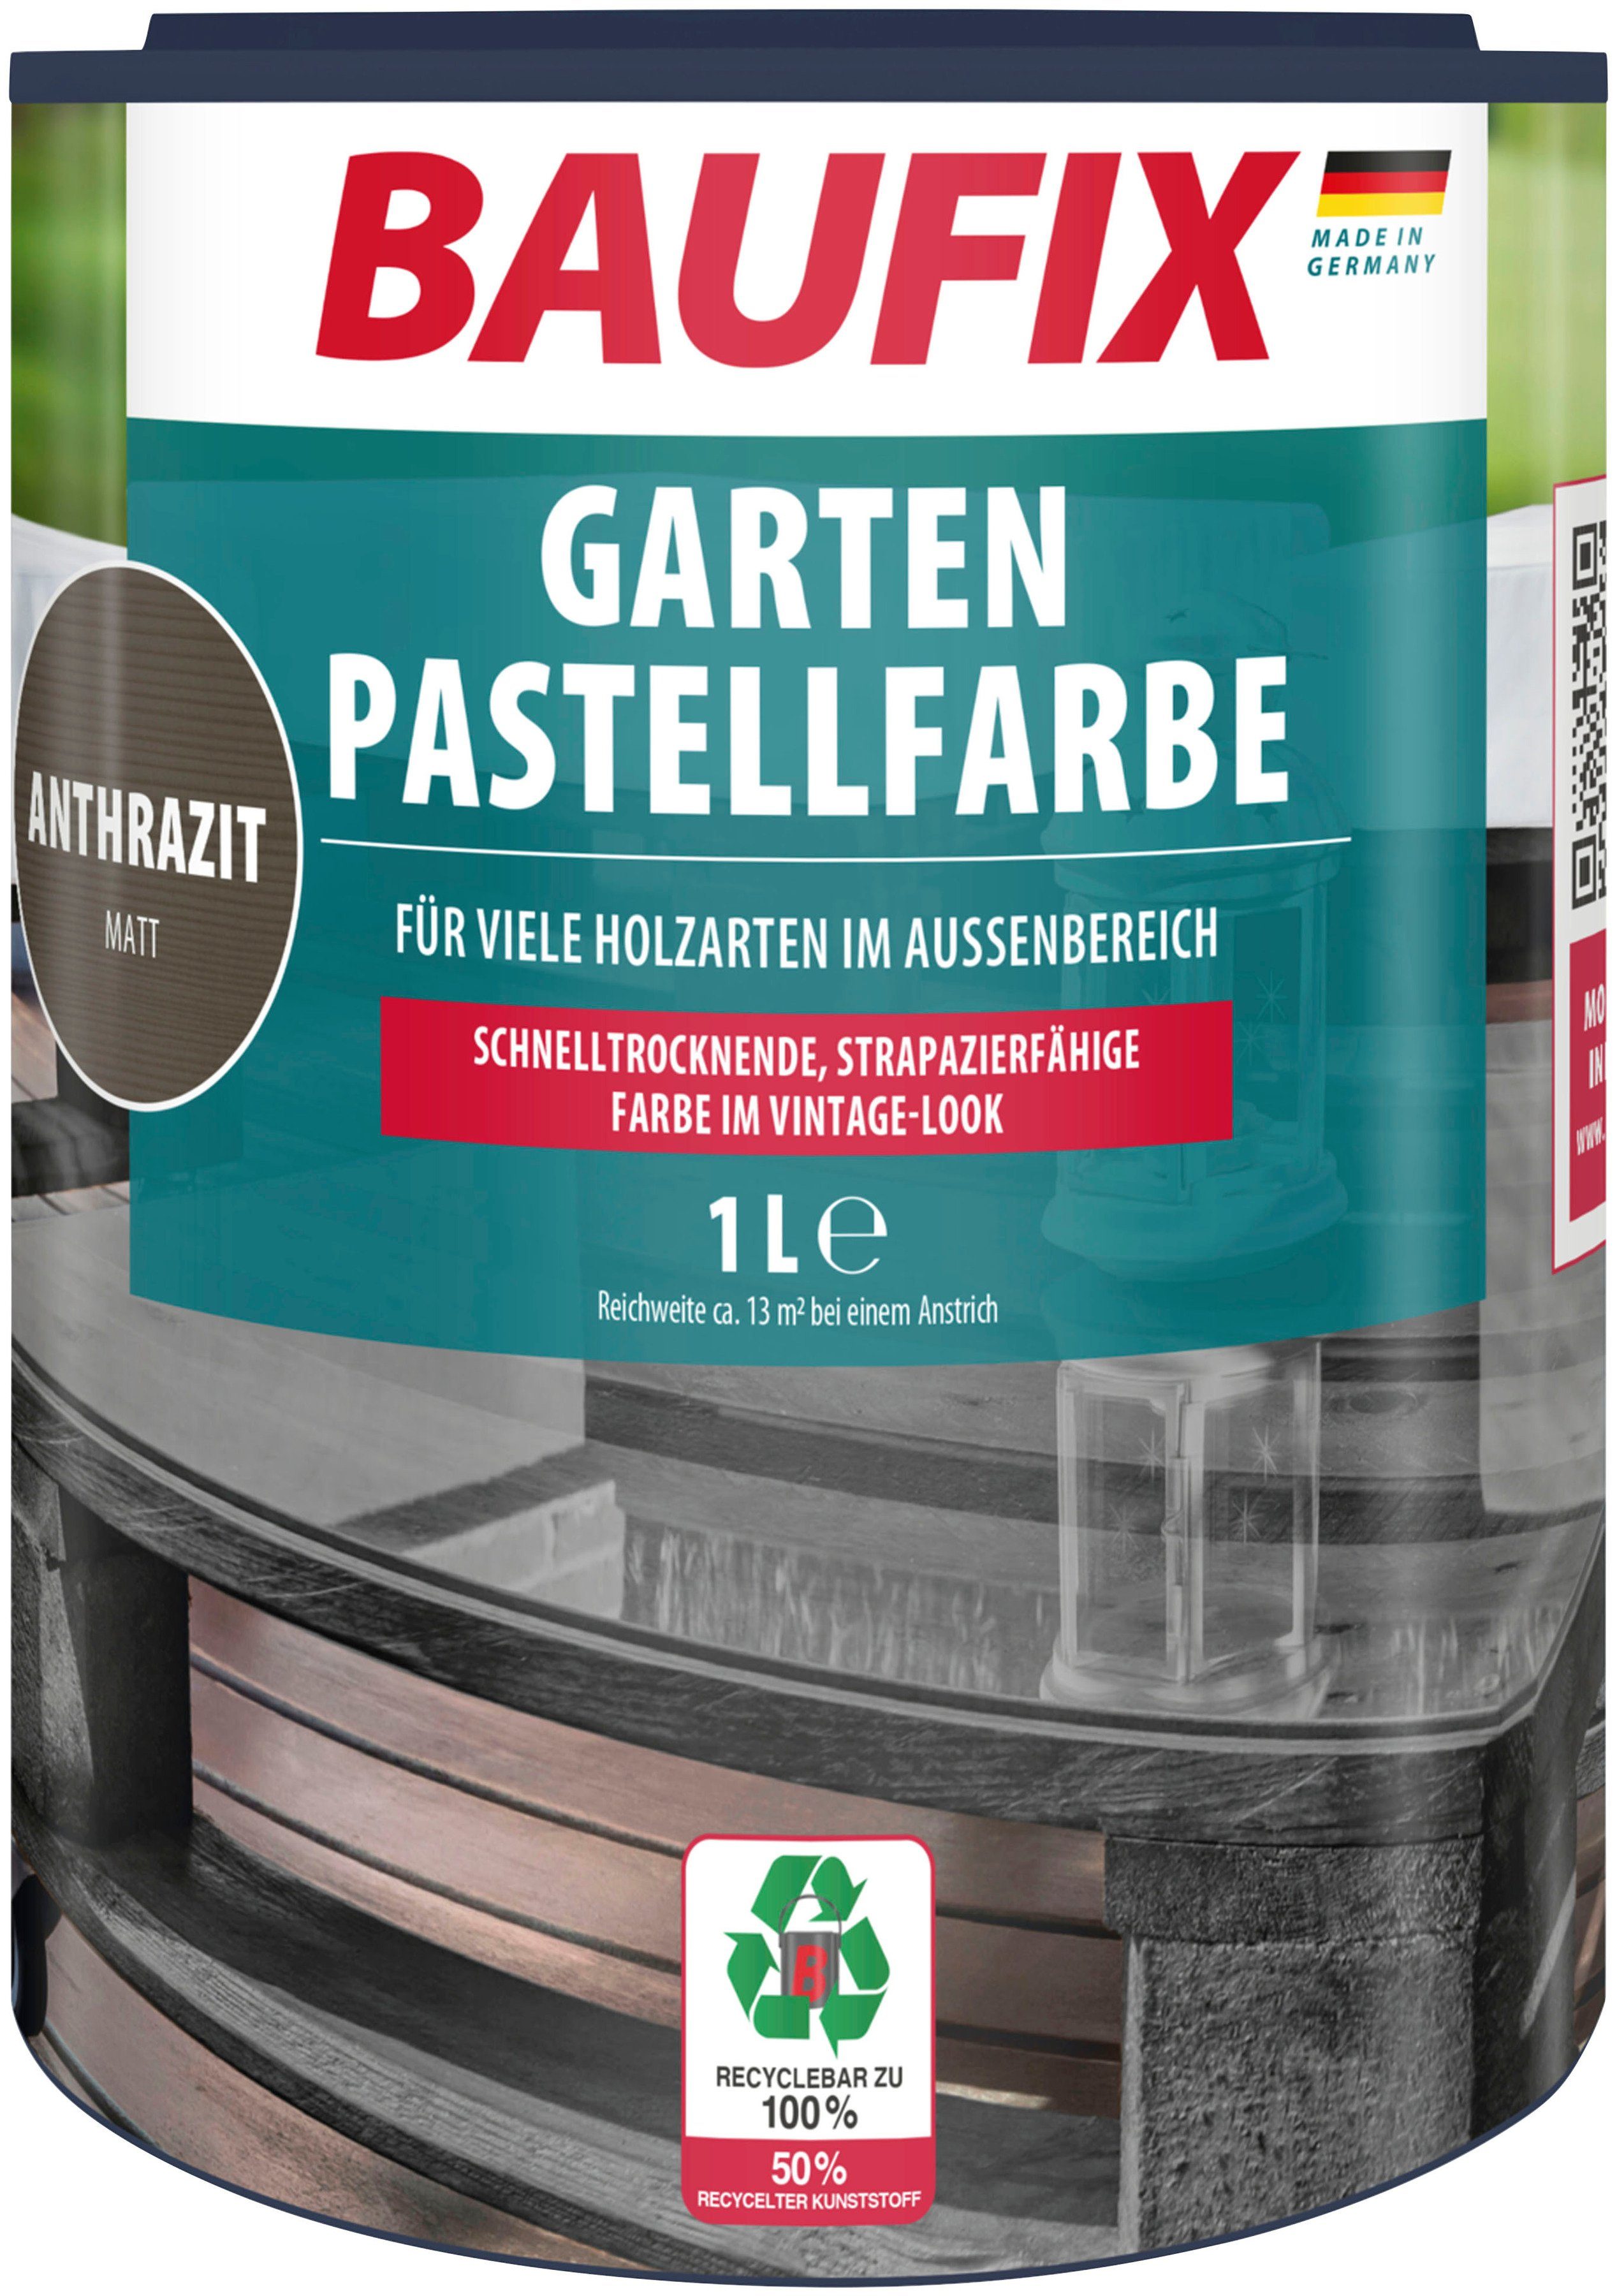 Baufix Holzlack Garten Pastellfarbe, schnell trocknend, strapazierfähig, halbtransparent, 1L, matt anthrazit